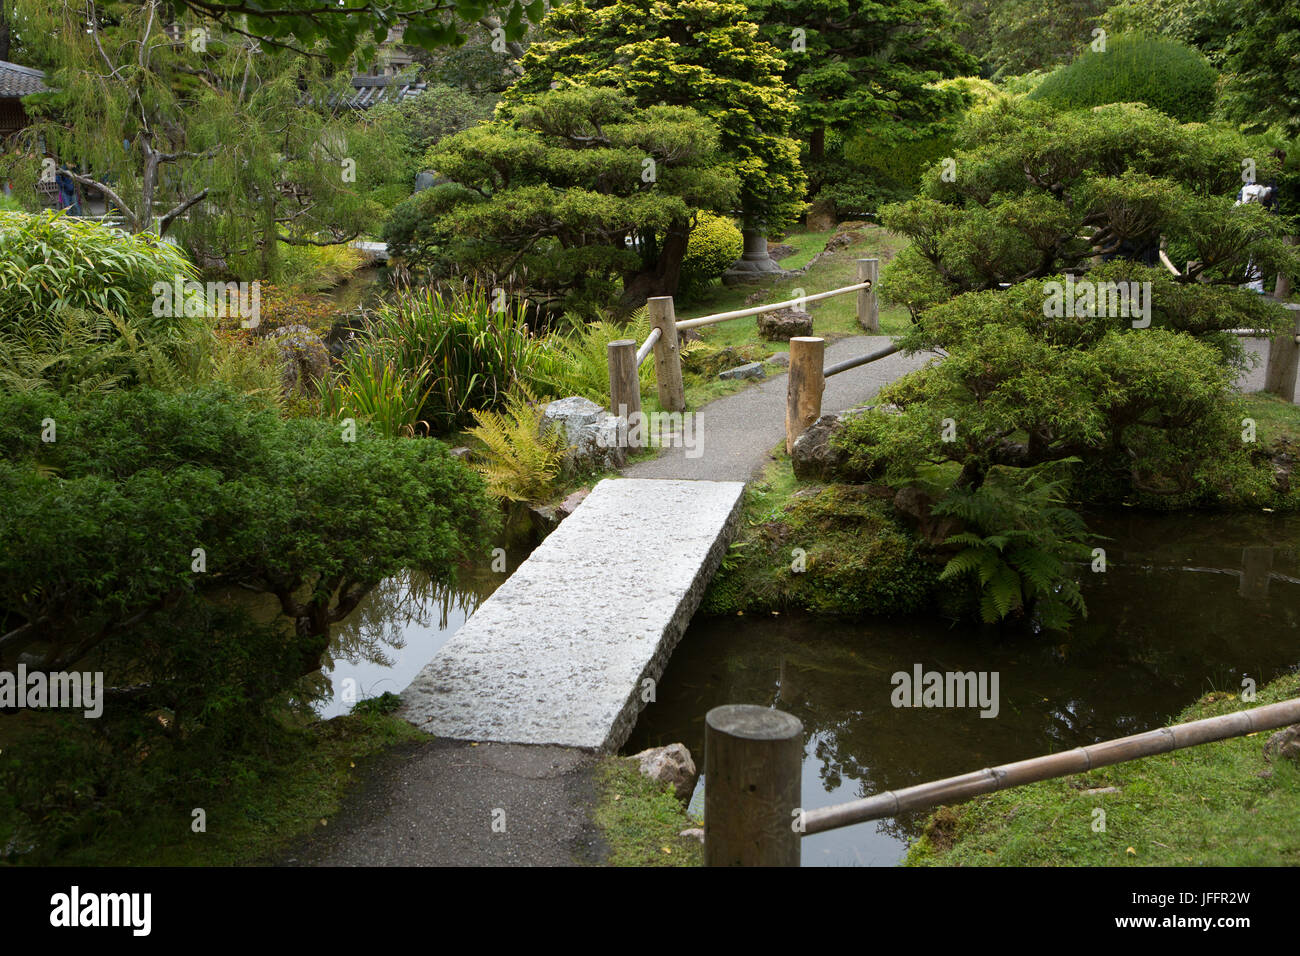 A footbridge, garden and walkway through San Francisco's Japanese Tea Garden. Stock Photo